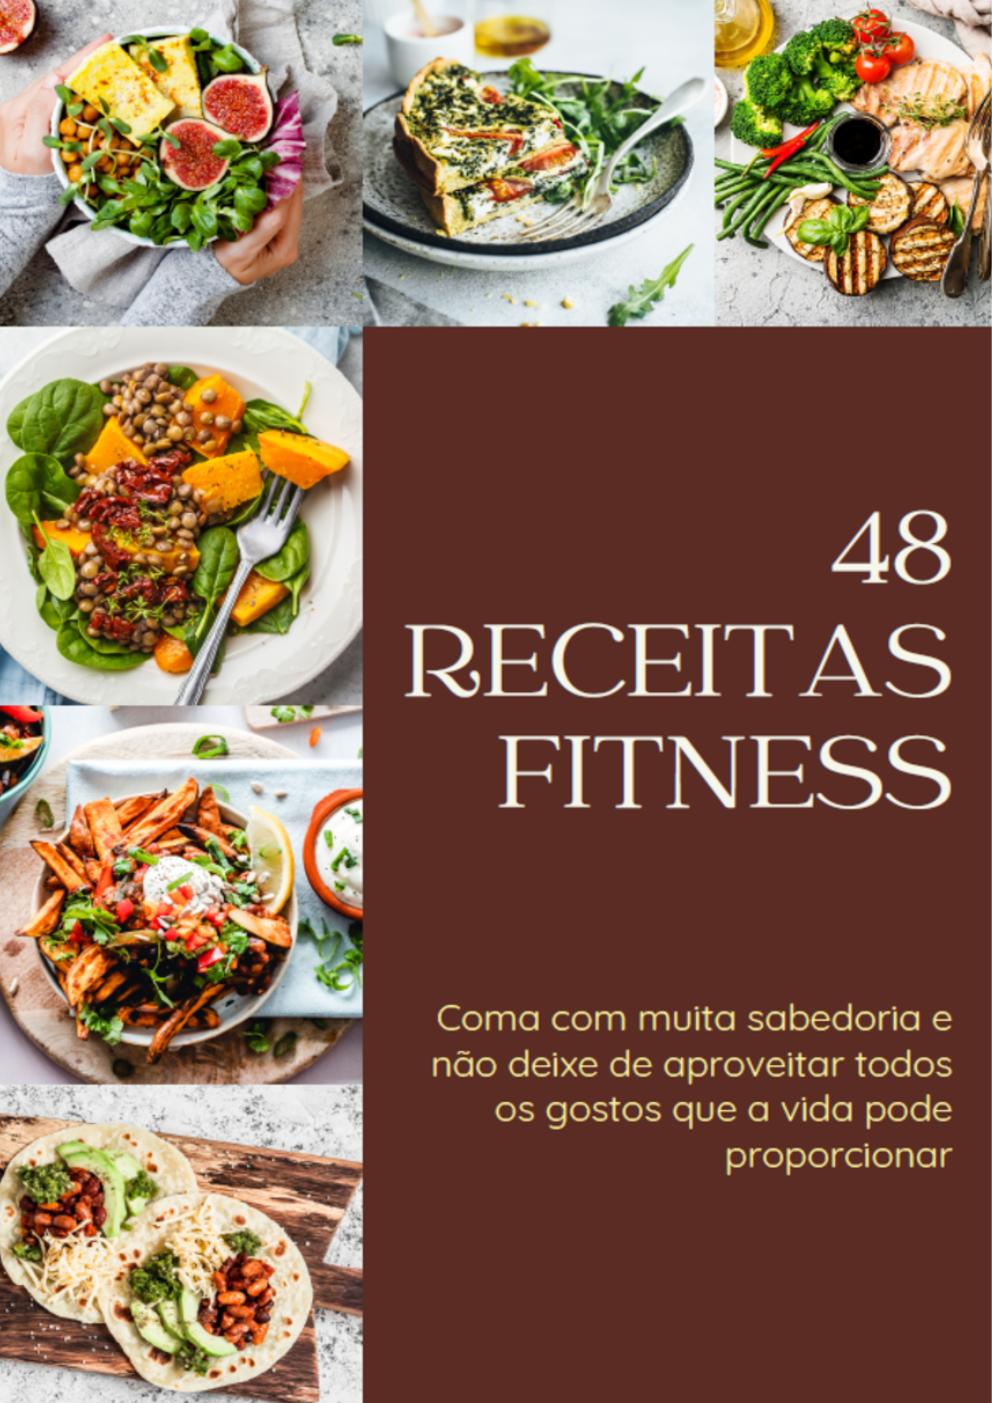 E-book – 48 Receitas Fitness - NL Caramelo Solutions